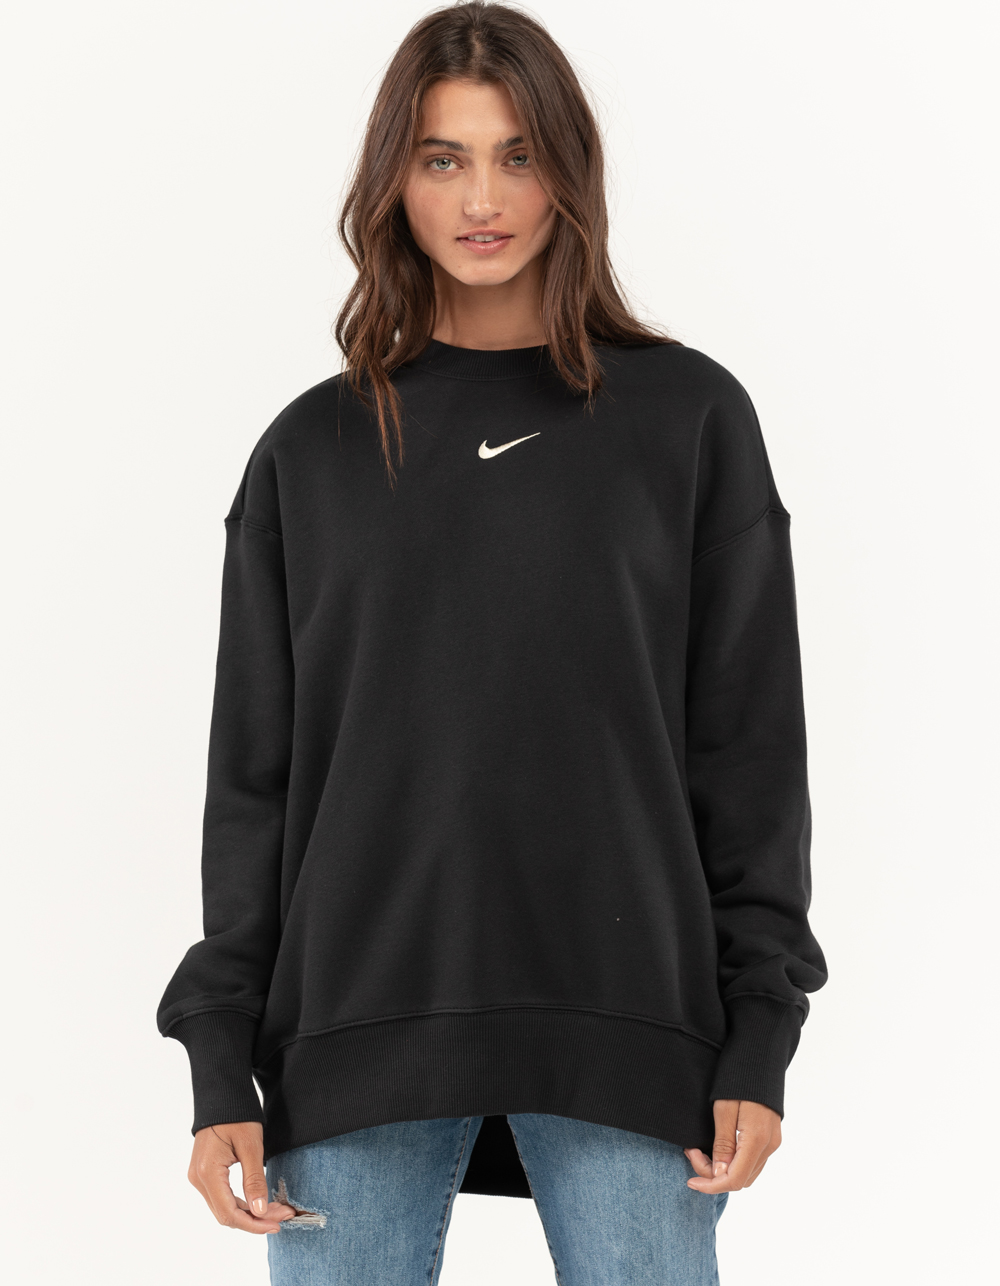 NIKE Sportswear Womens Oversized Crewneck Sweatshirt - BLACK | Tillys